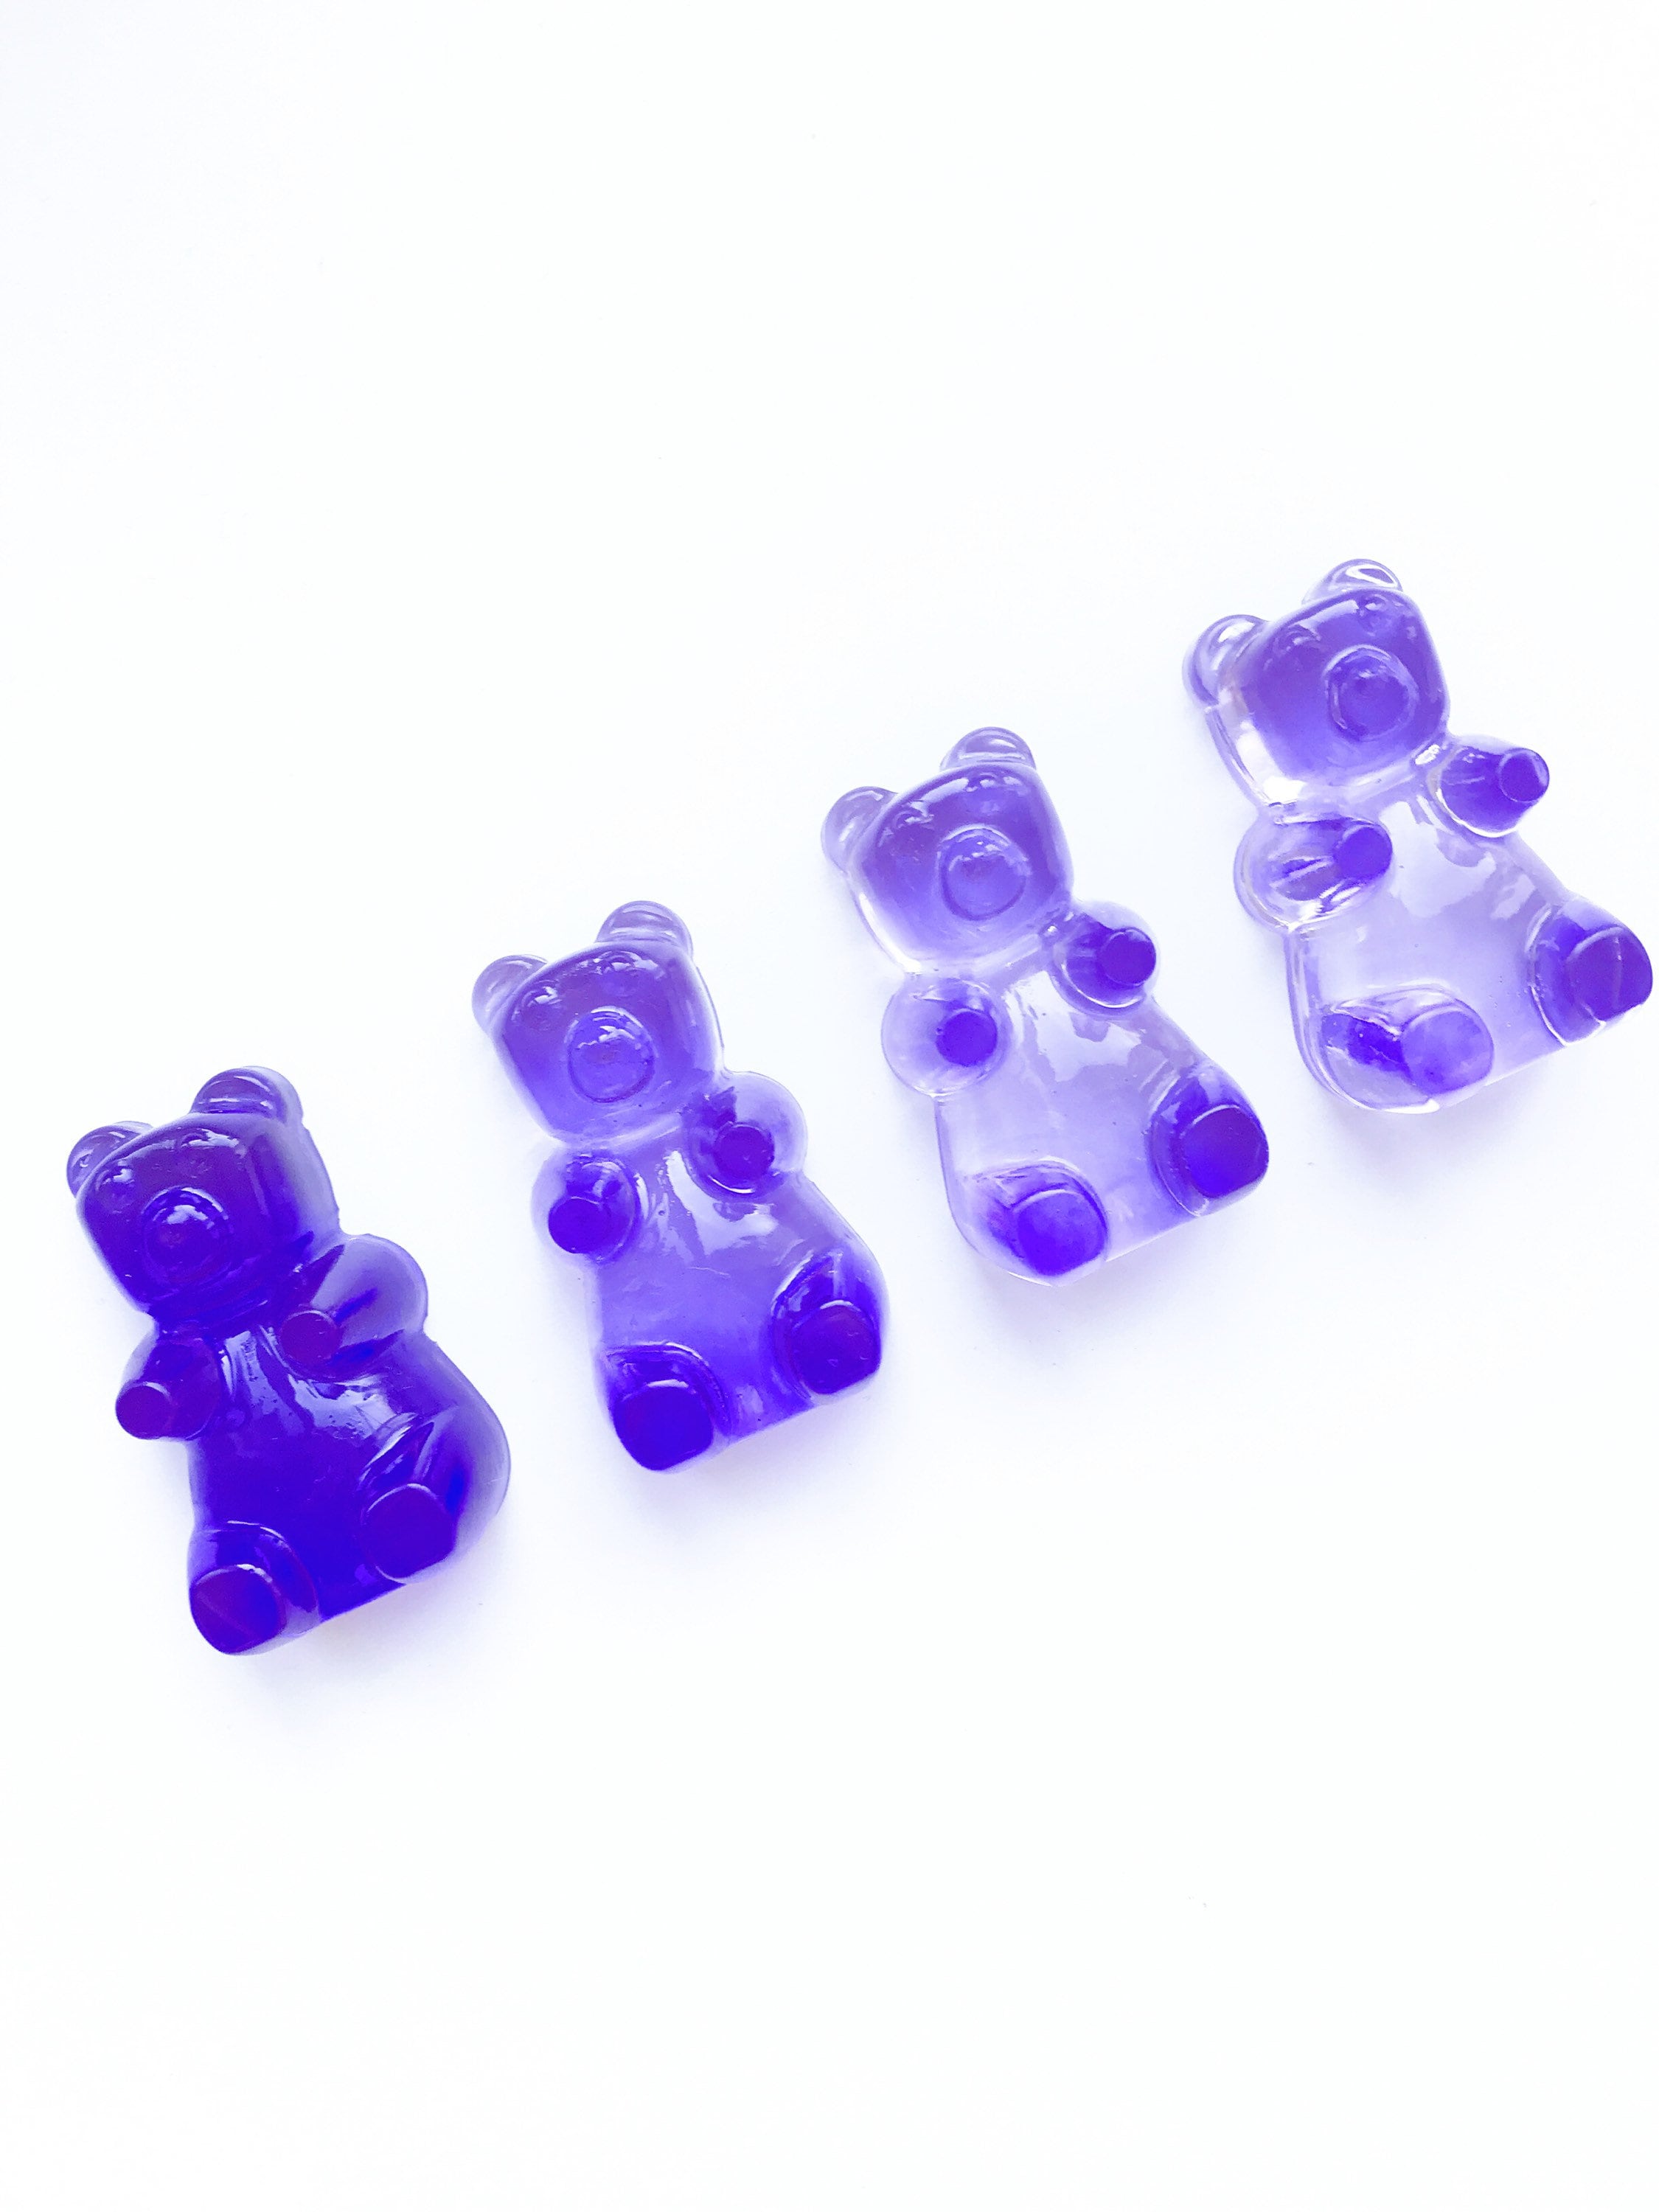 8 Cavity SHINY Large Gummy Bear Silicone Mold 